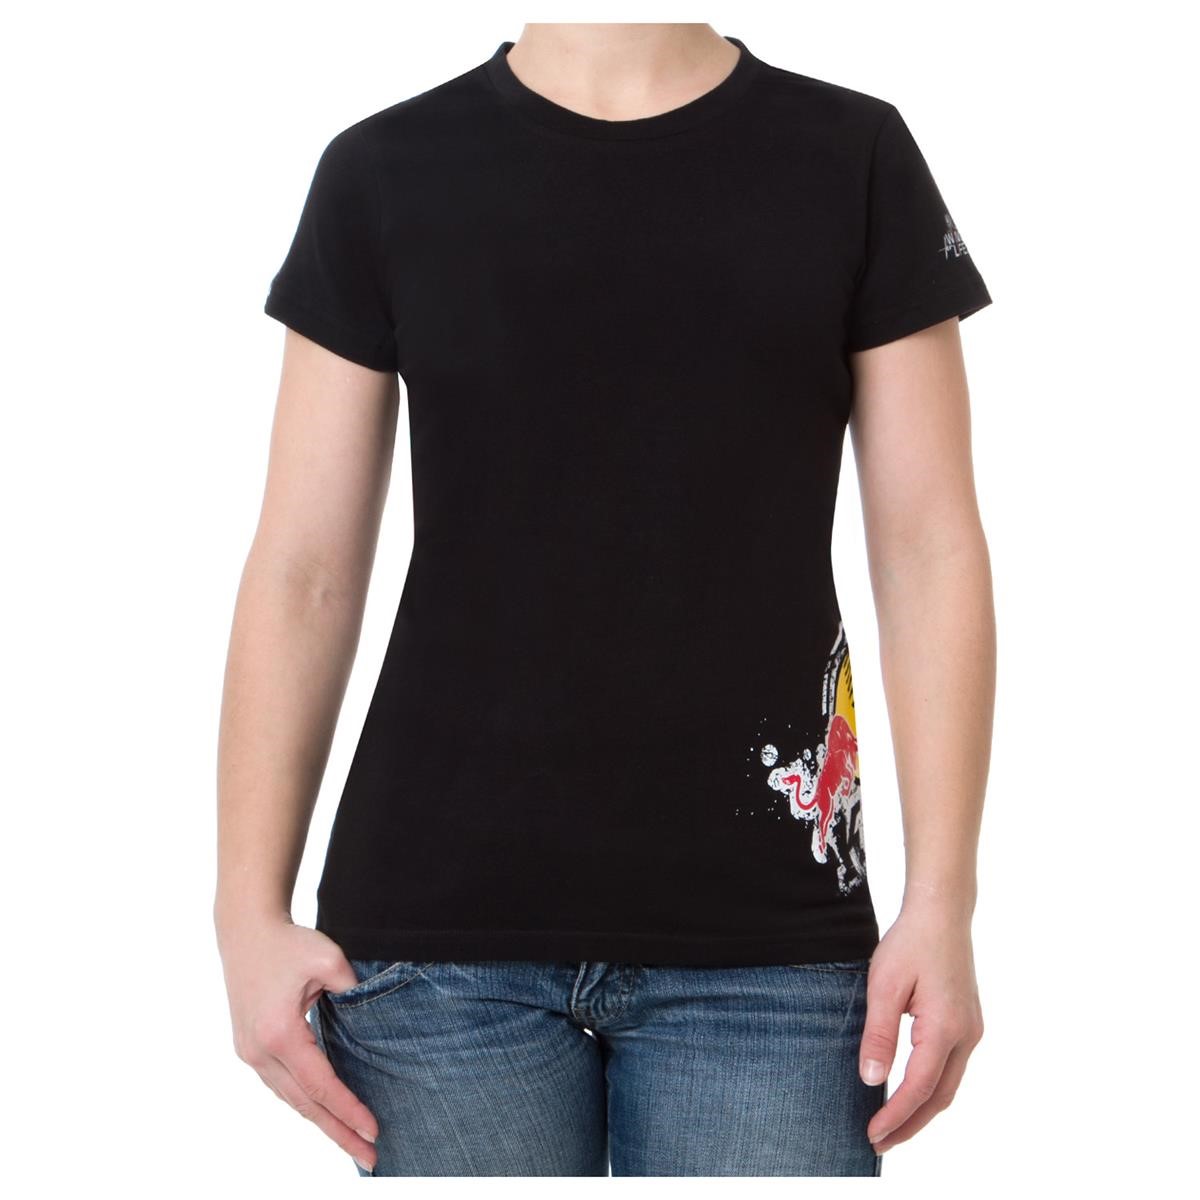 Kini Red Bull Girls T-Shirt Splattro Black